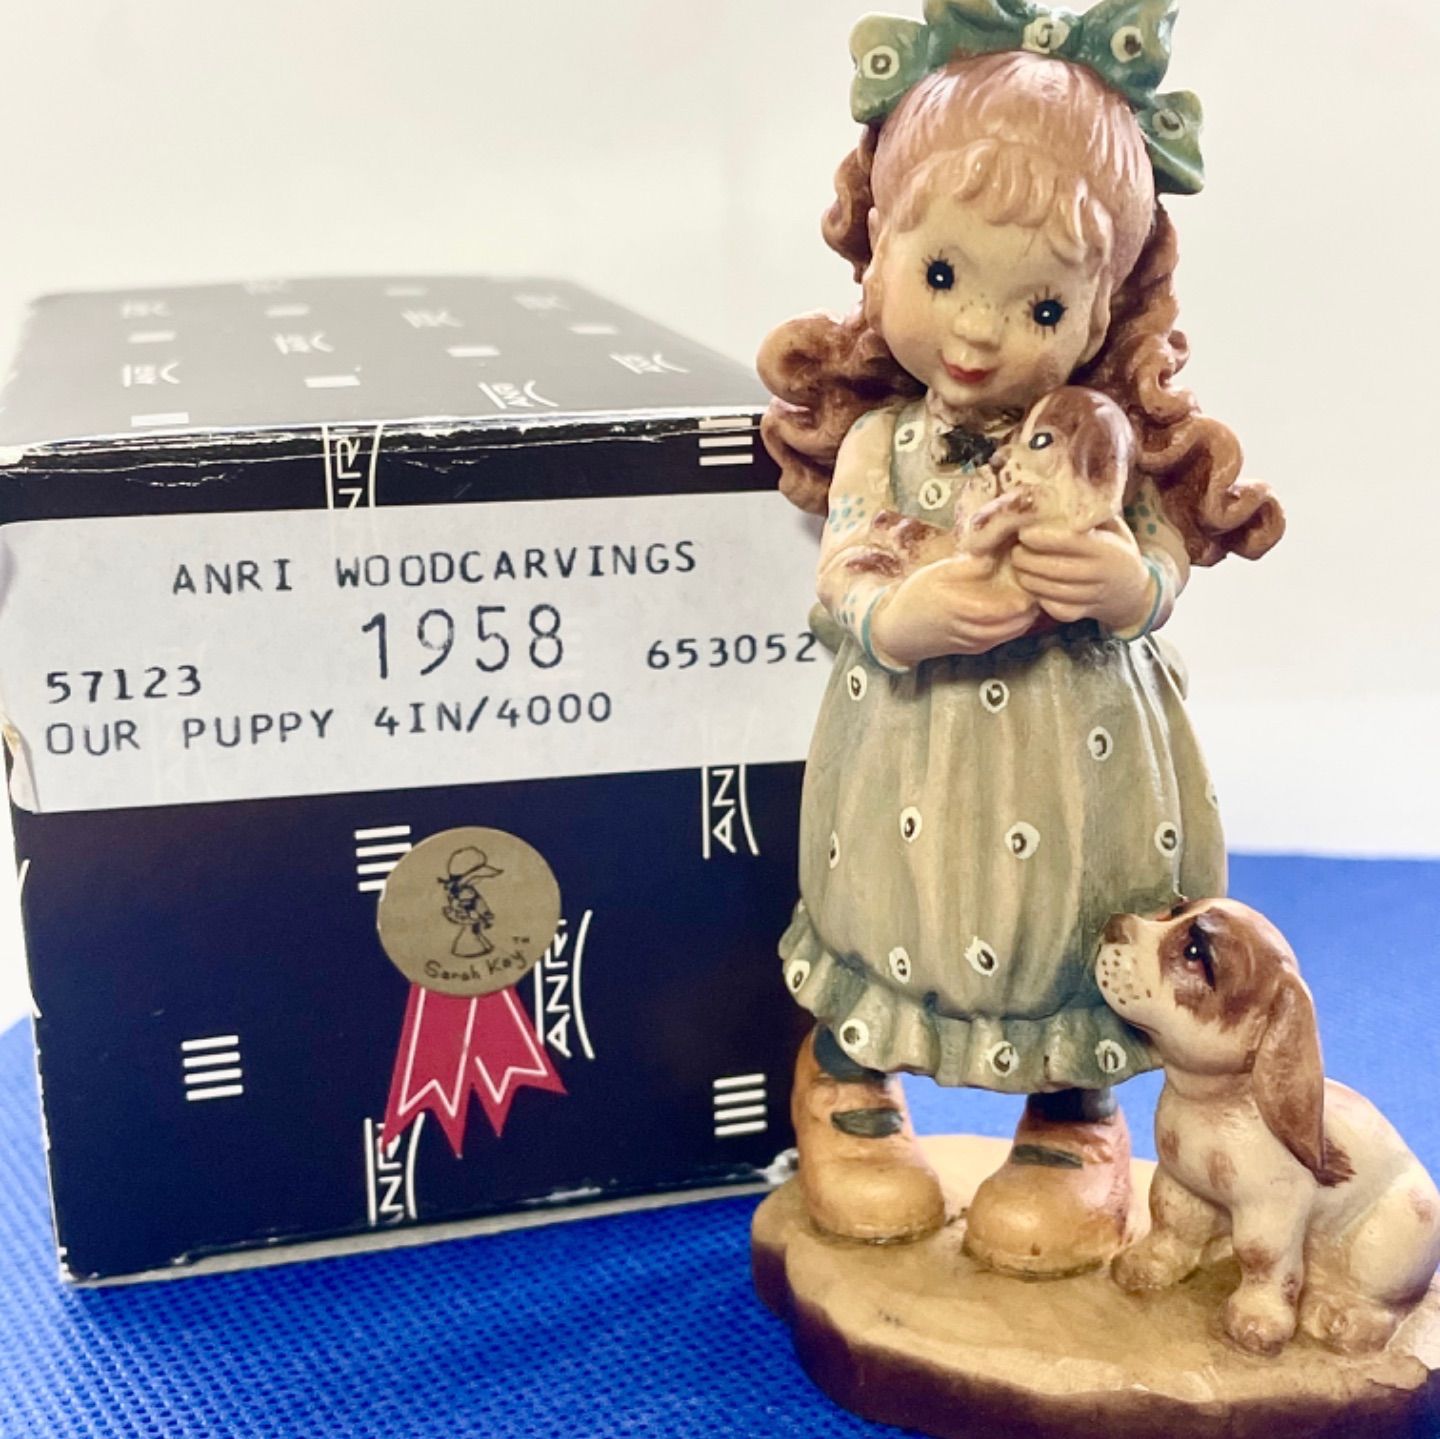 アンリ木彫人形 1958/4000 限定生産品 サラ ケイ 刻印入り 廃盤 希少 